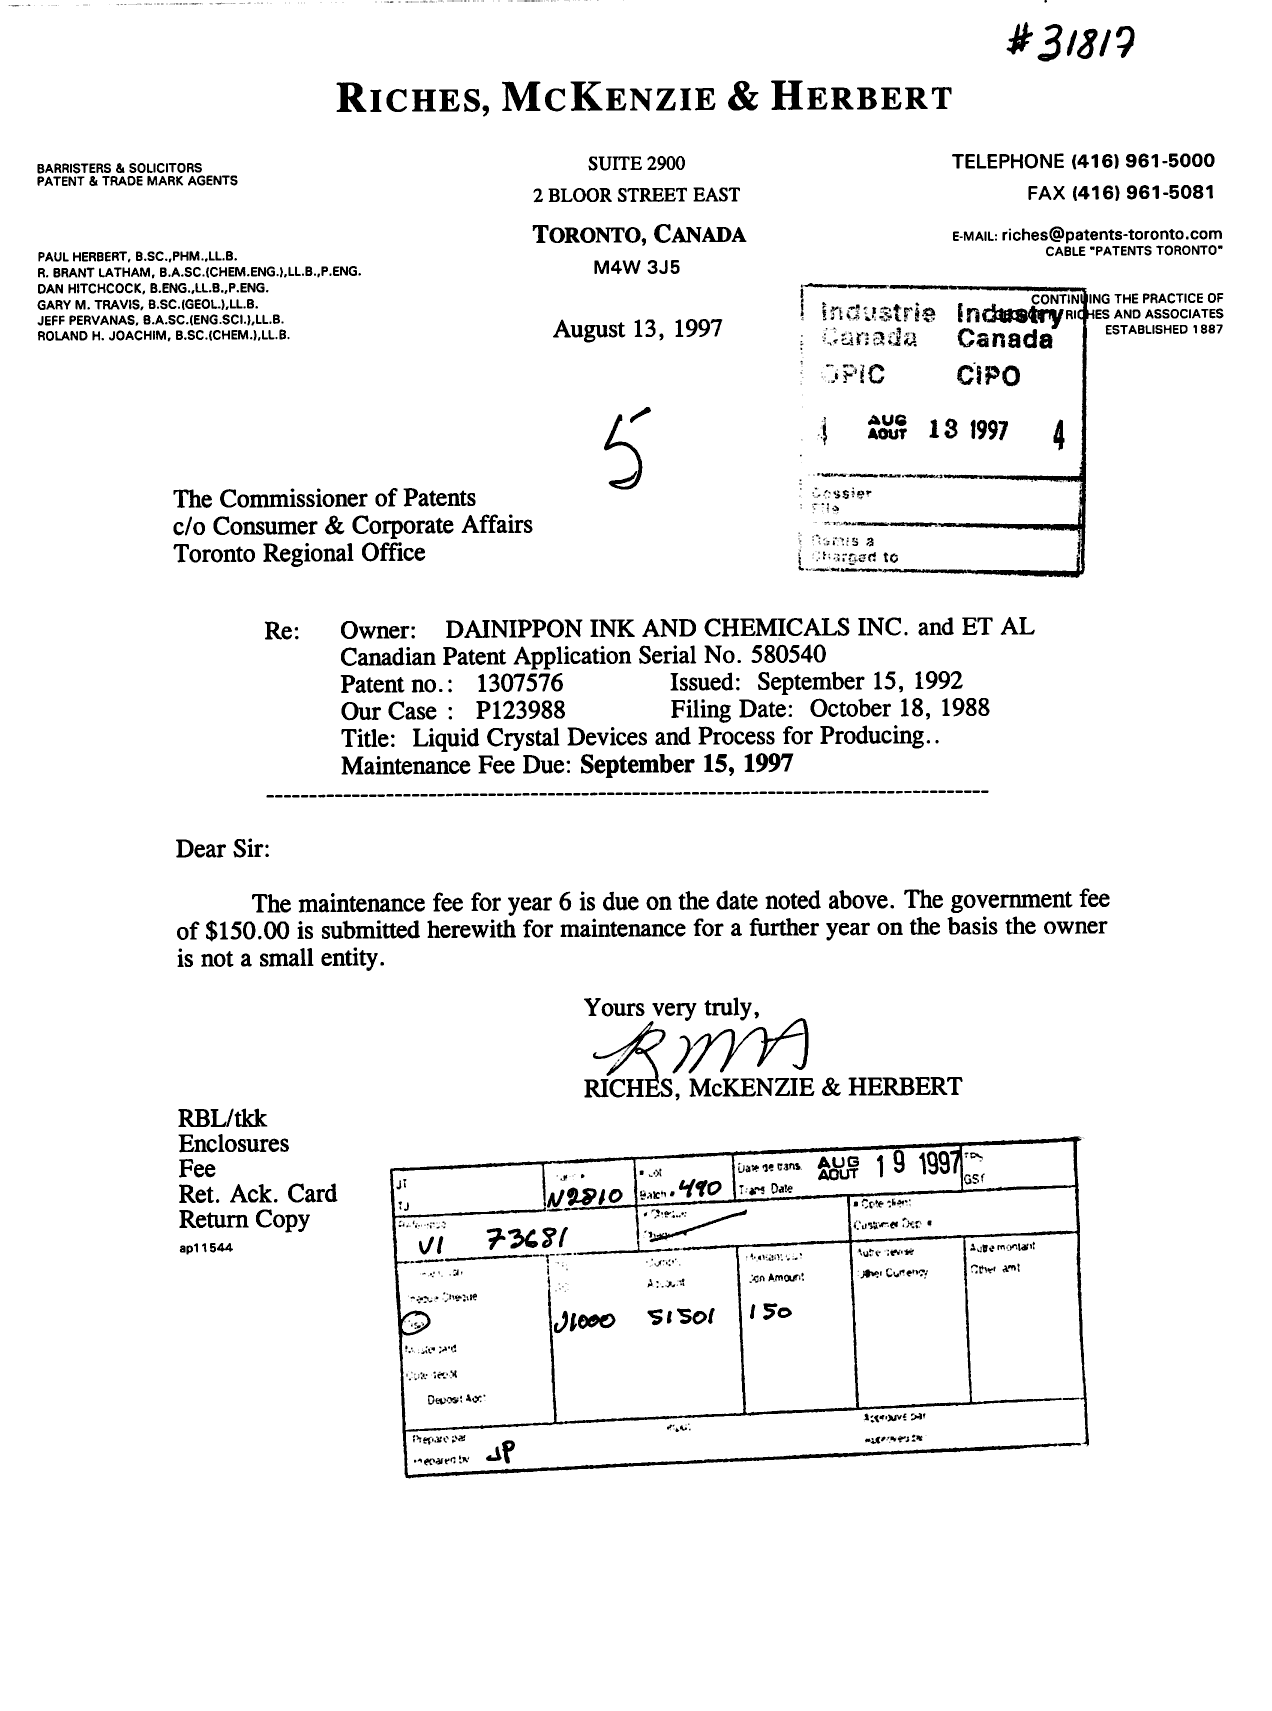 Document de brevet canadien 1307576. Taxes 19970813. Image 1 de 1